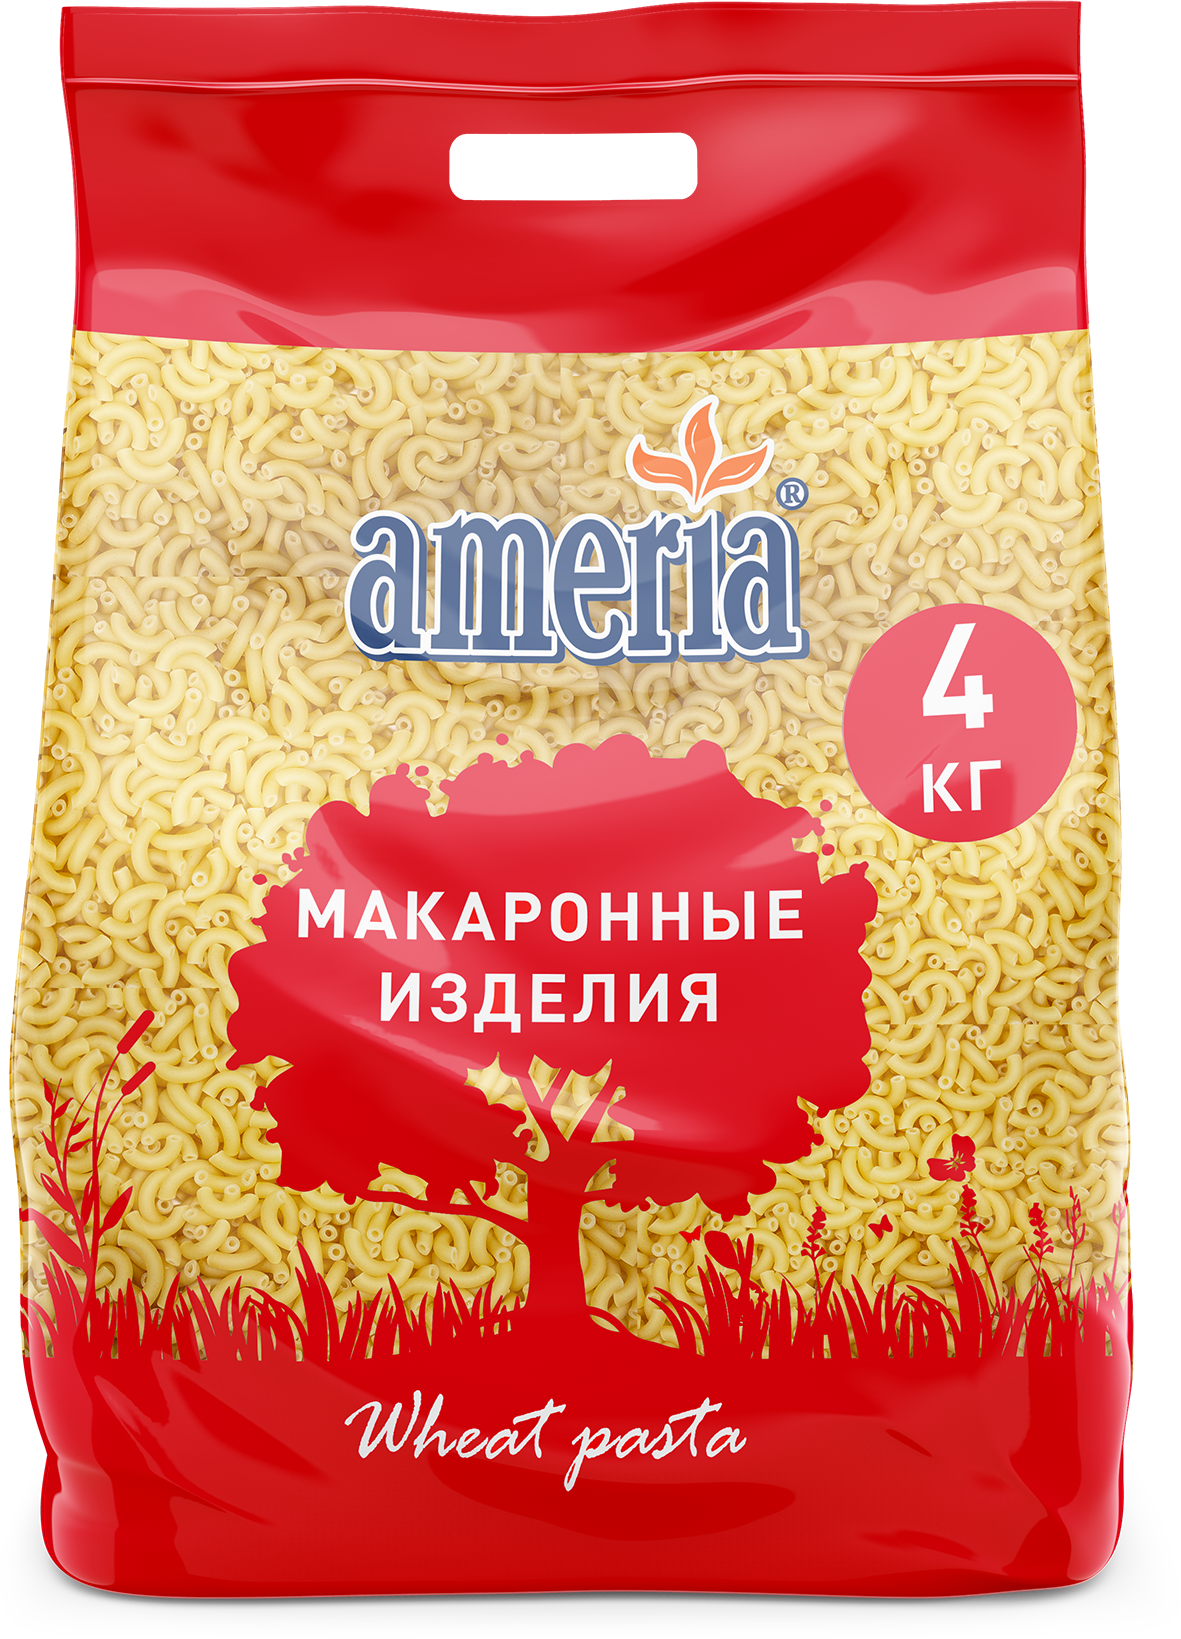 Макаронные изделия Ameria Рожки гладкие мелкие из мягких сортов пшеницы № 57, 4 кг